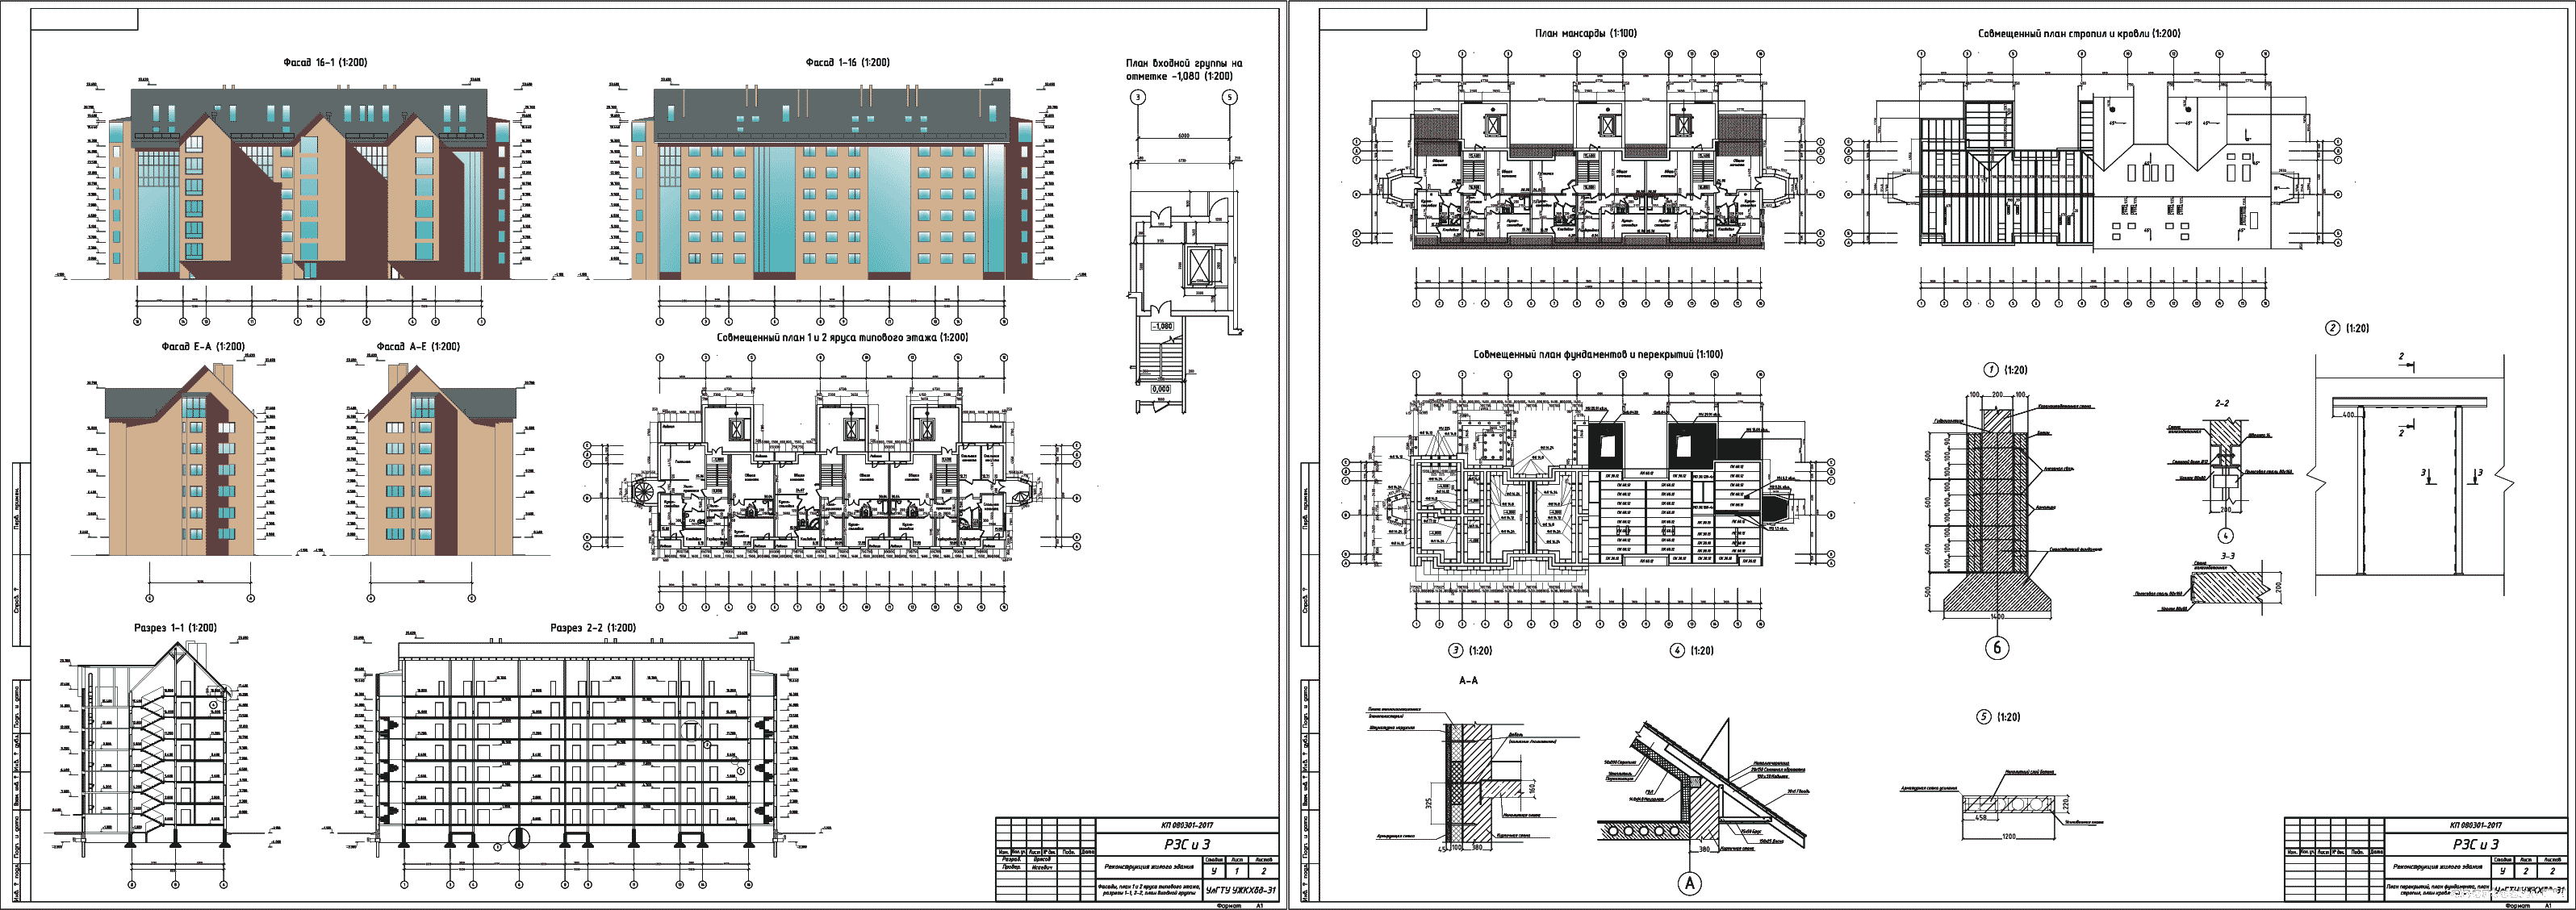 Курсовой проект - Реконструкция жилого здания 45,0 х 13,2 м